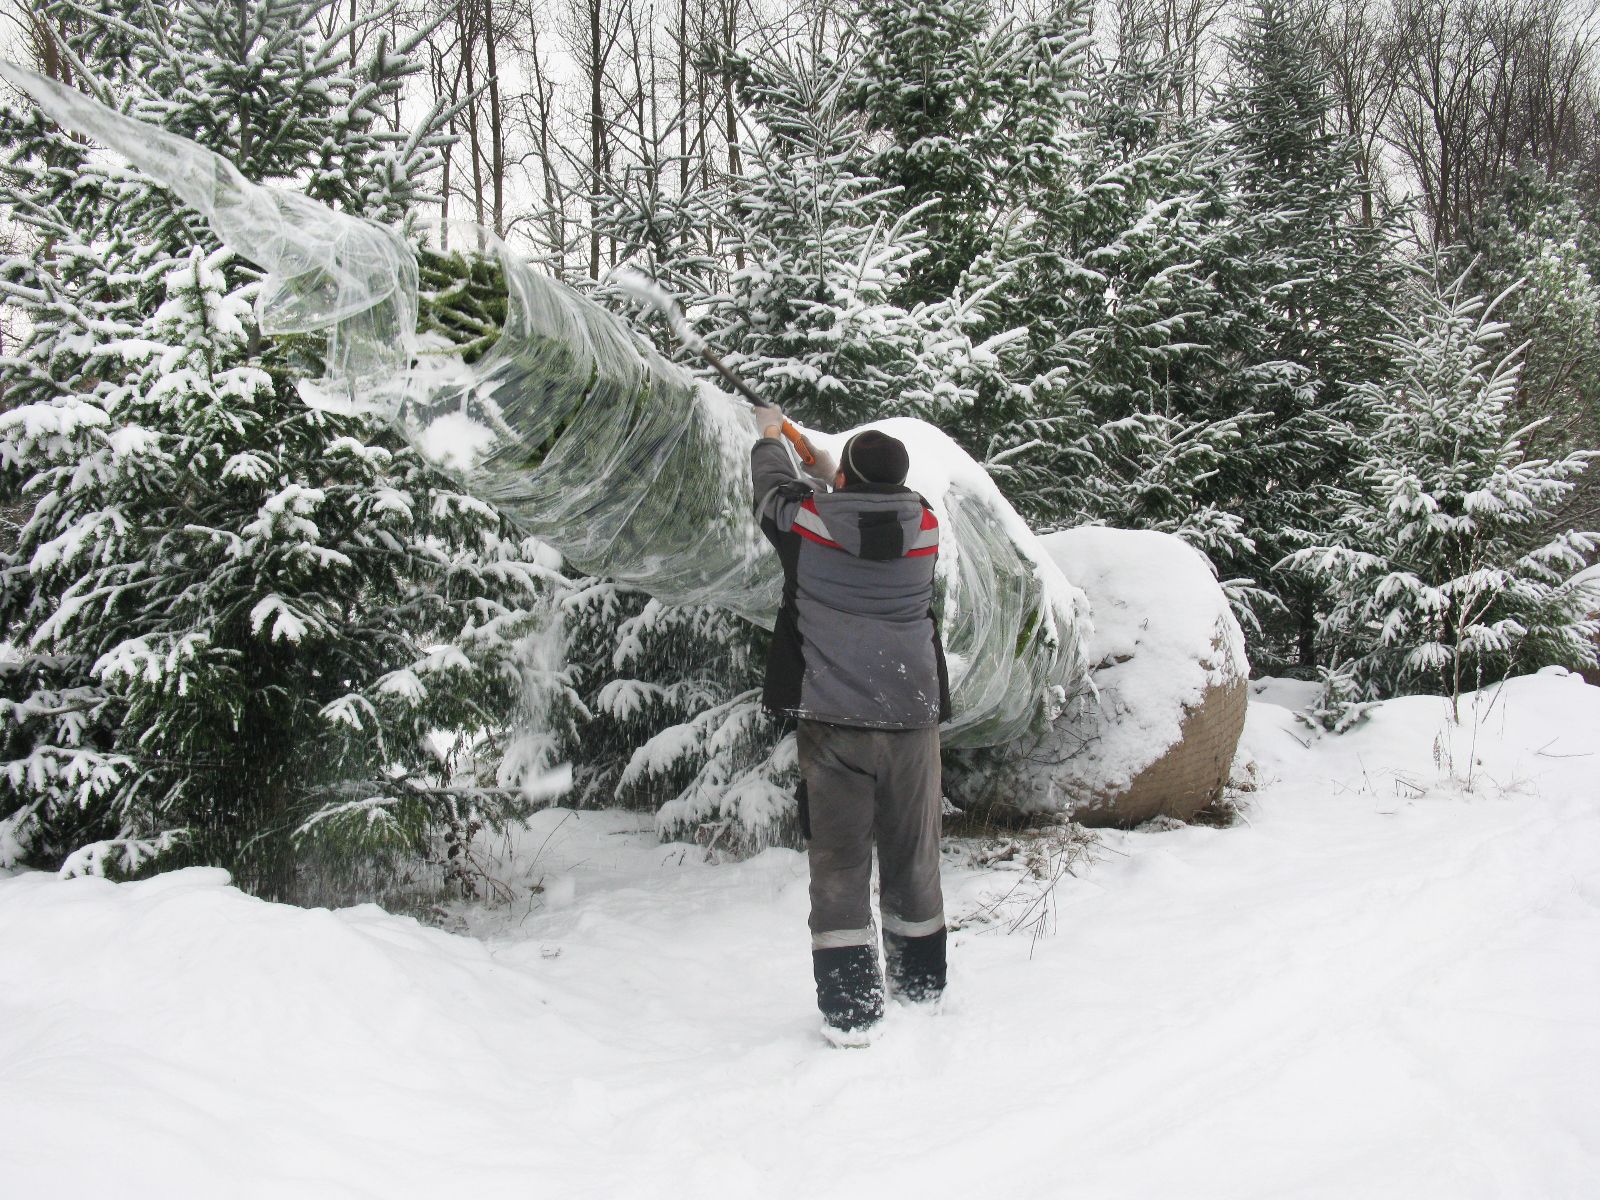 Пересадка деревьев в зимний период: особенности и советы